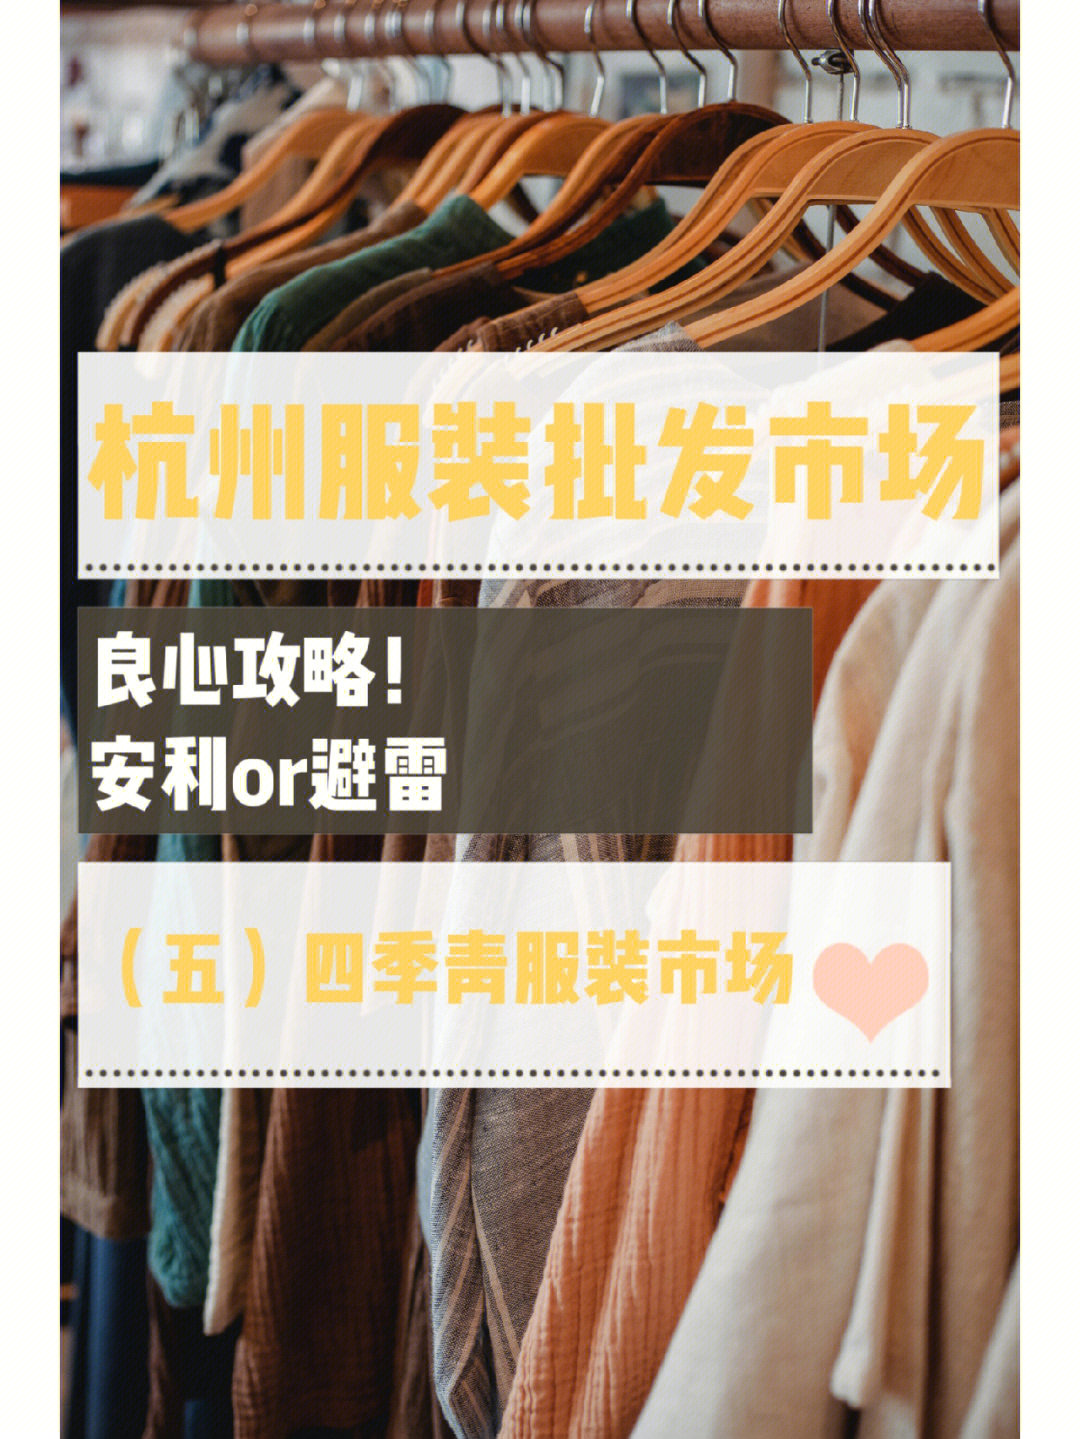 四季青服装大市场  7515男装中心751509位置:浙江省